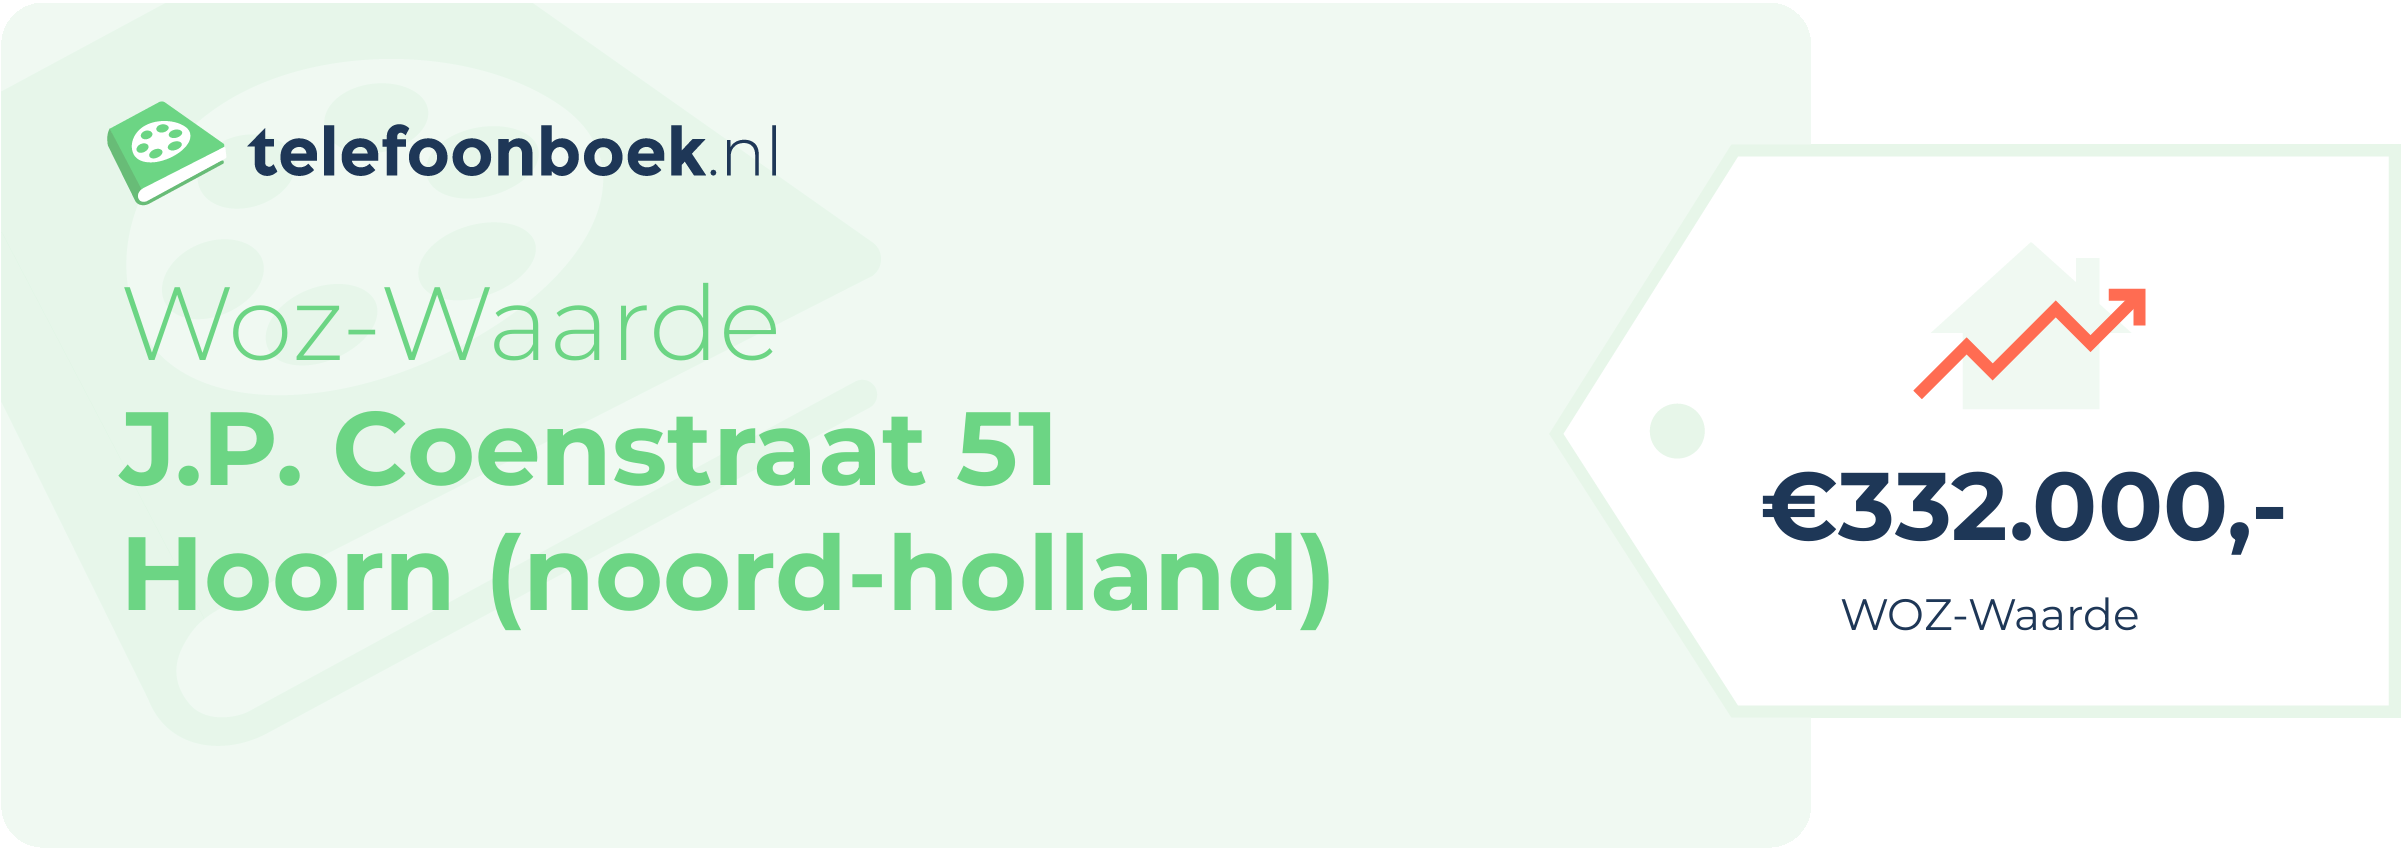 WOZ-waarde J.P. Coenstraat 51 Hoorn (Noord-Holland)